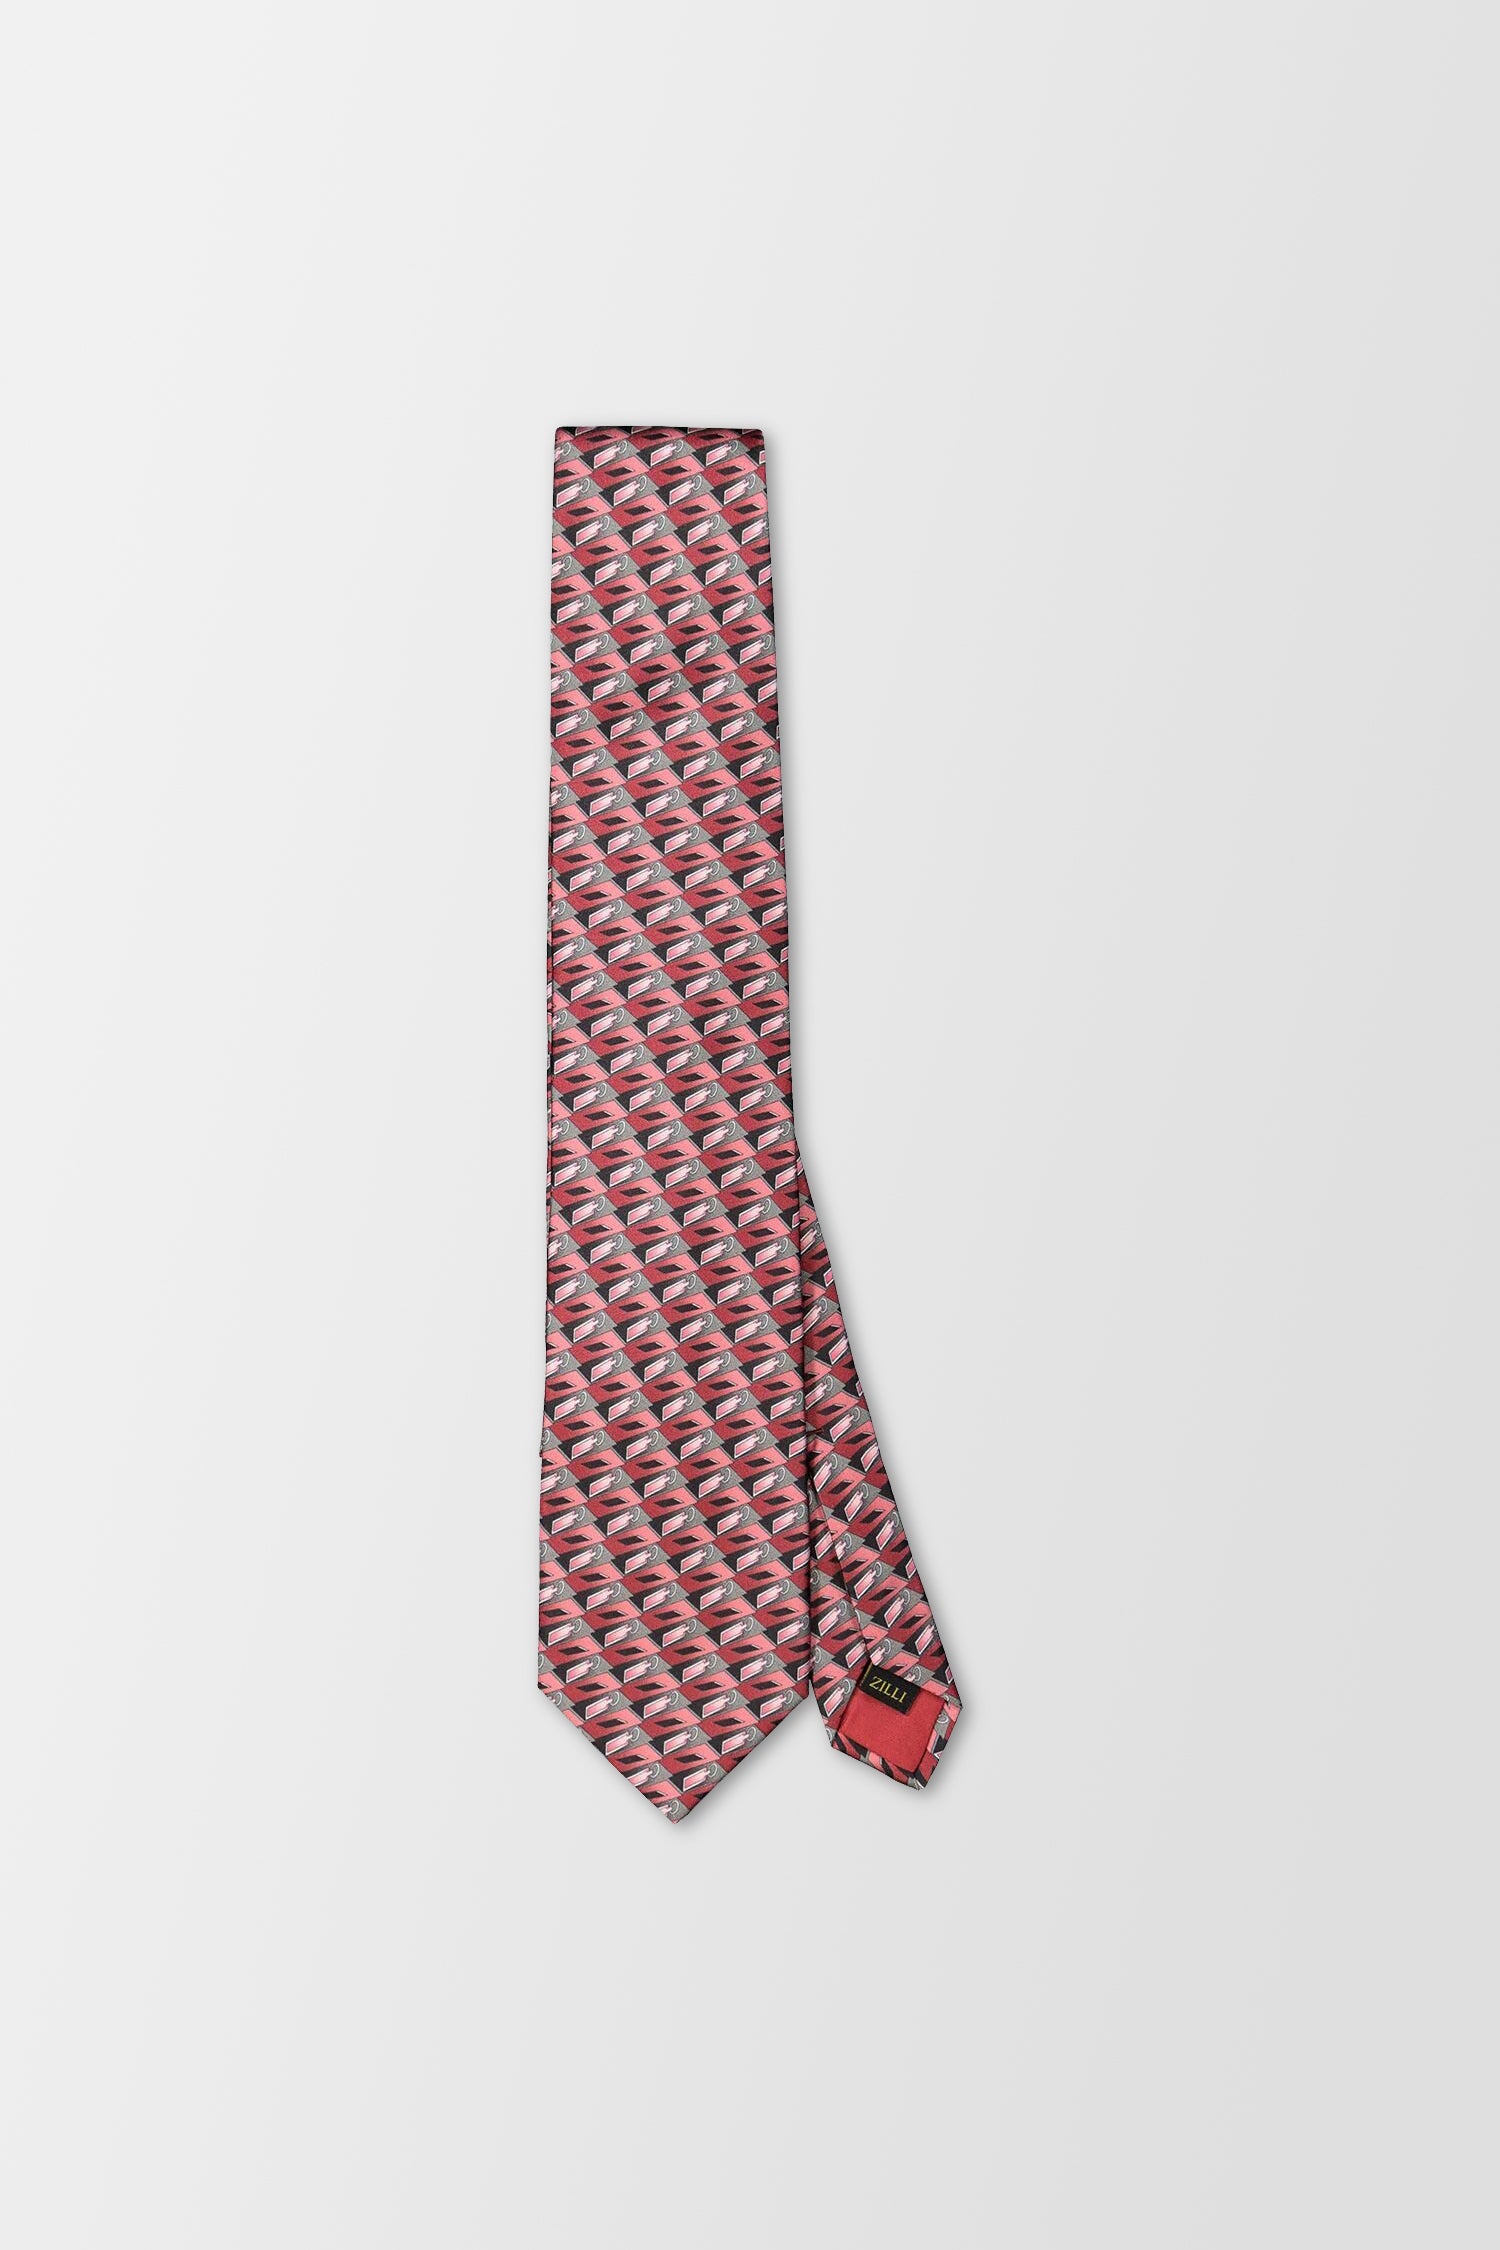 Zilli Red Tie